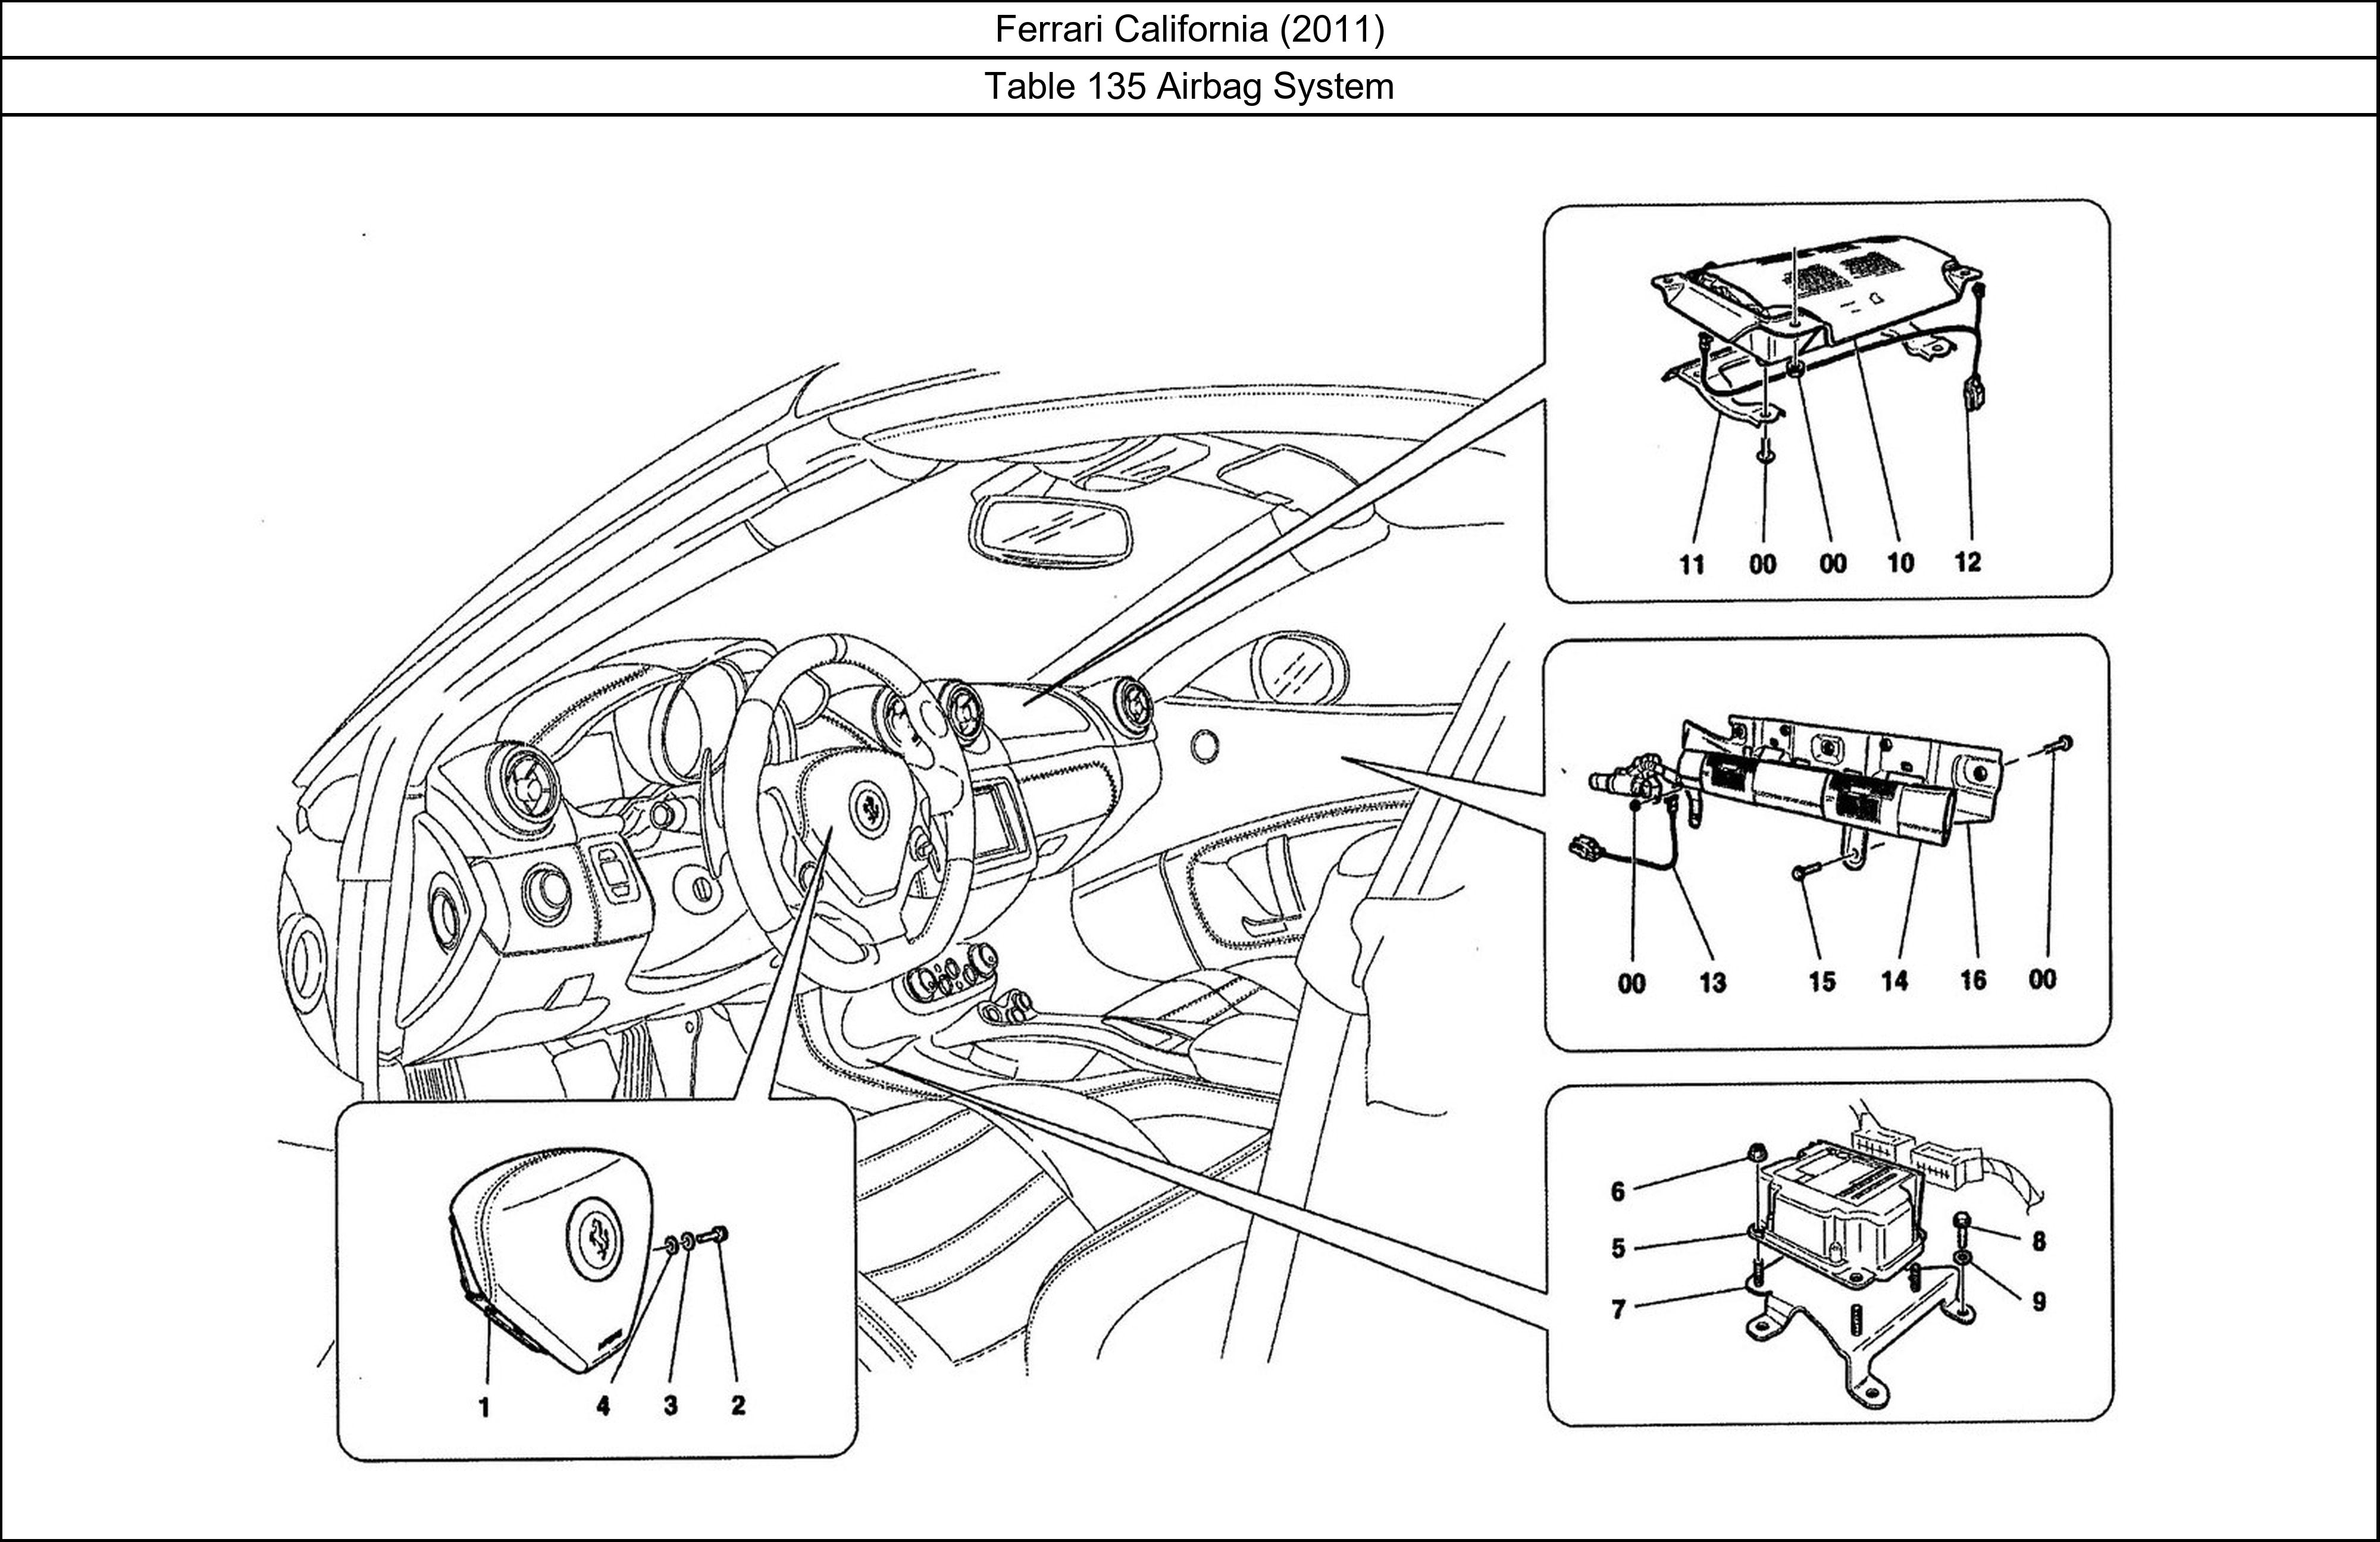 Ferrari Parts Ferrari California (2011) Table 135 Airbag System